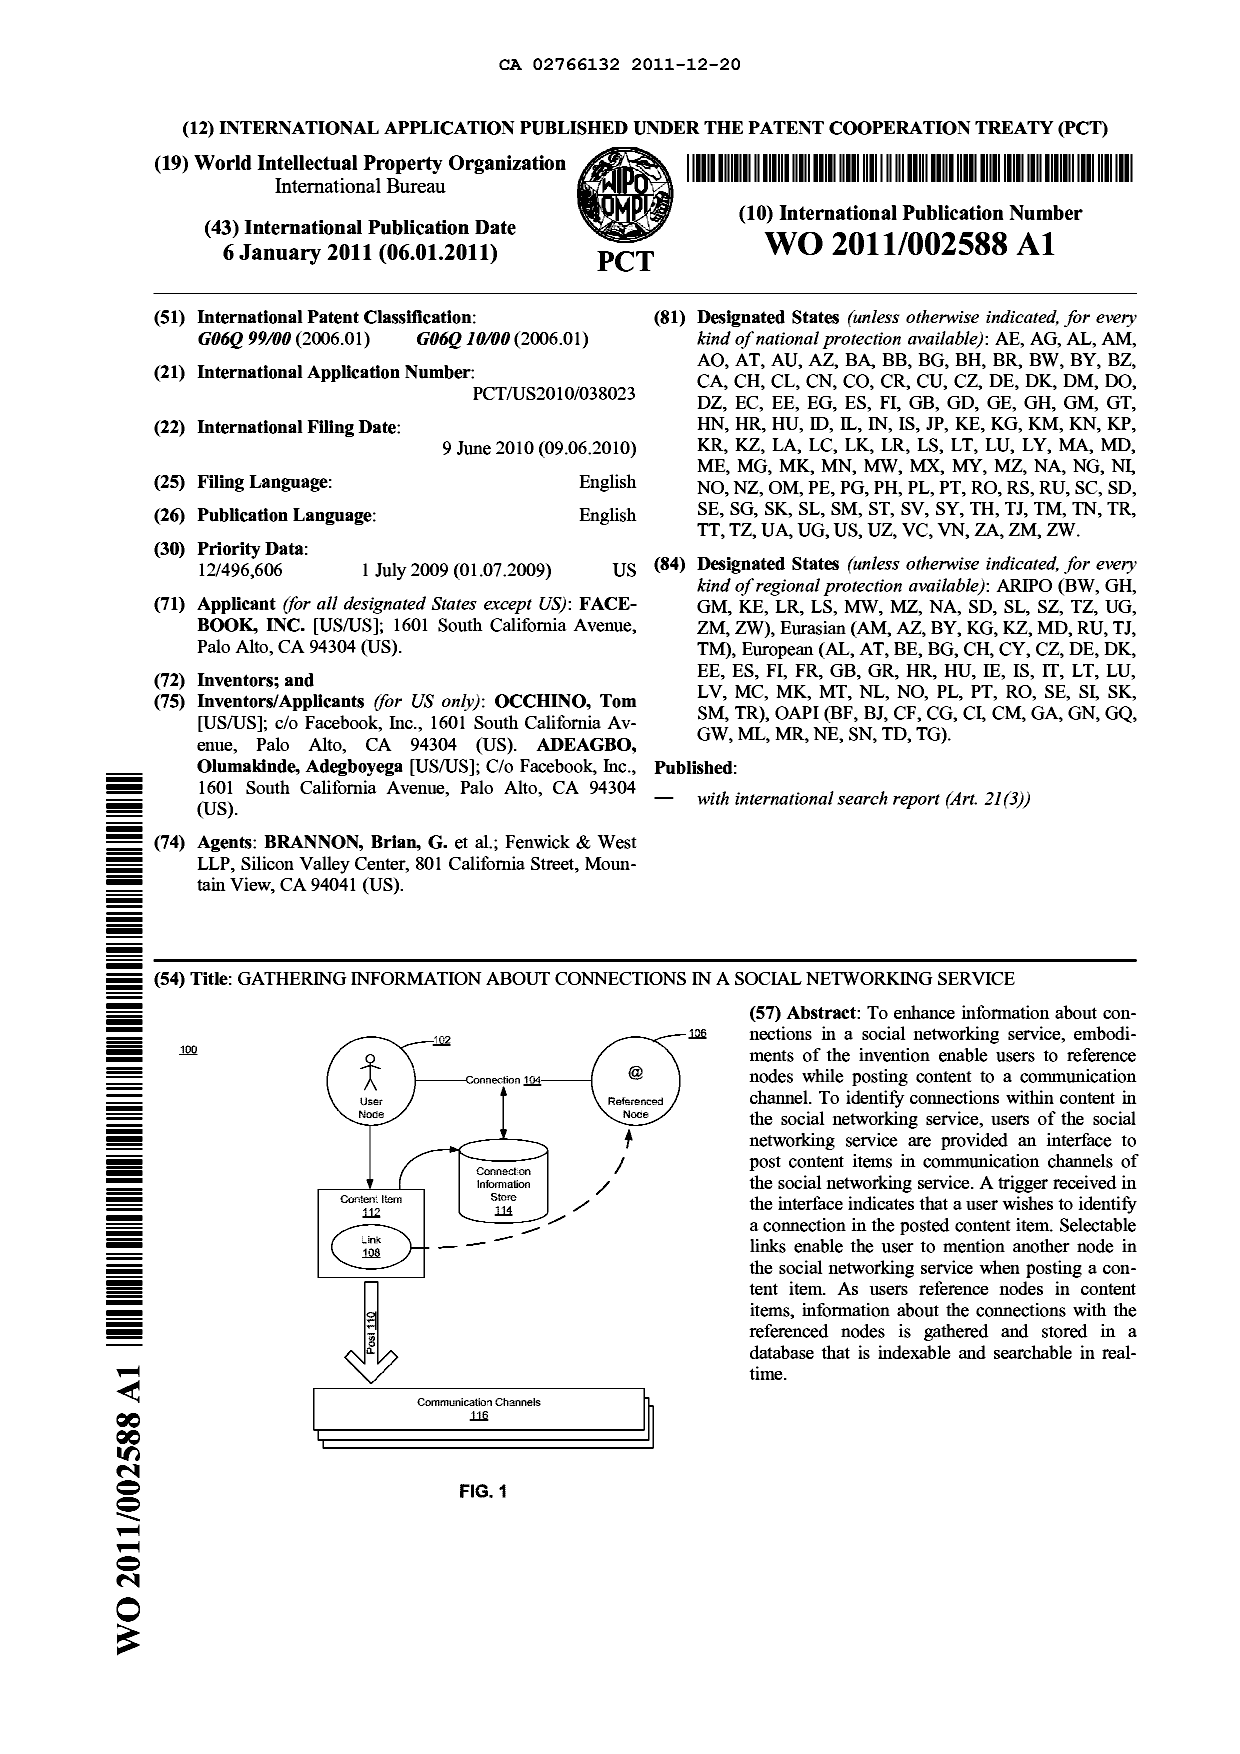 Document de brevet canadien 2766132. Abrégé 20111220. Image 1 de 1